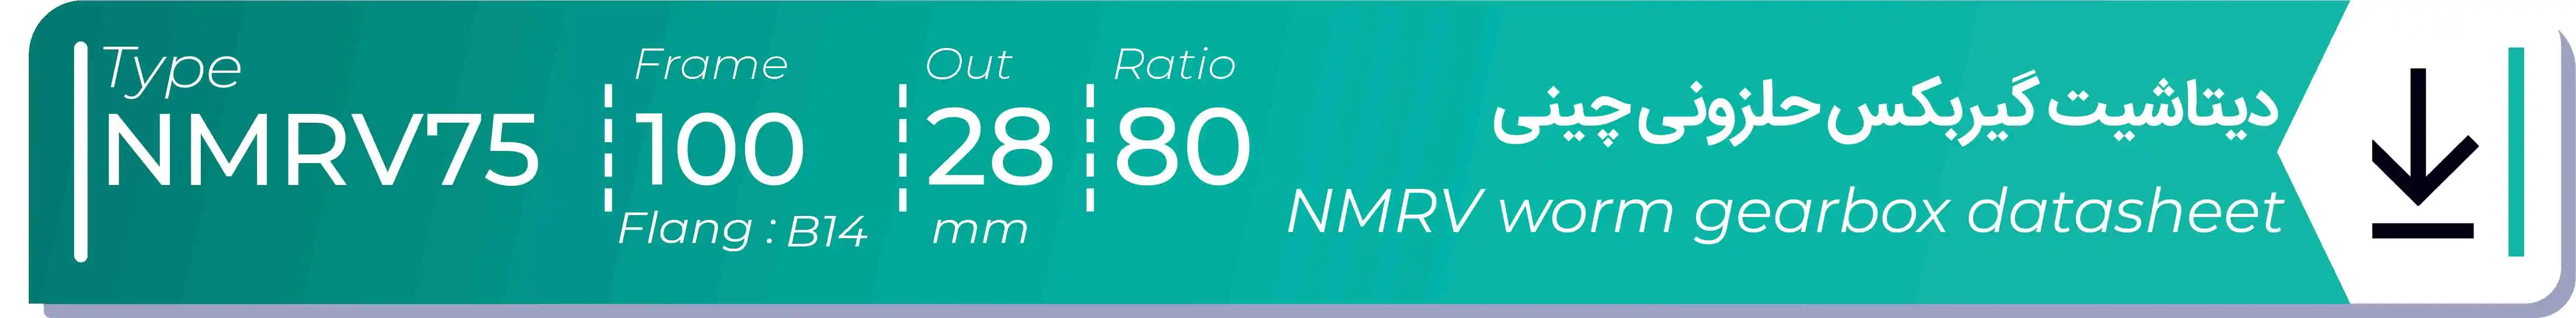  دیتاشیت و مشخصات فنی گیربکس حلزونی چینی   NMRV75  -  با خروجی 28- میلی متر و نسبت80 و فریم 100